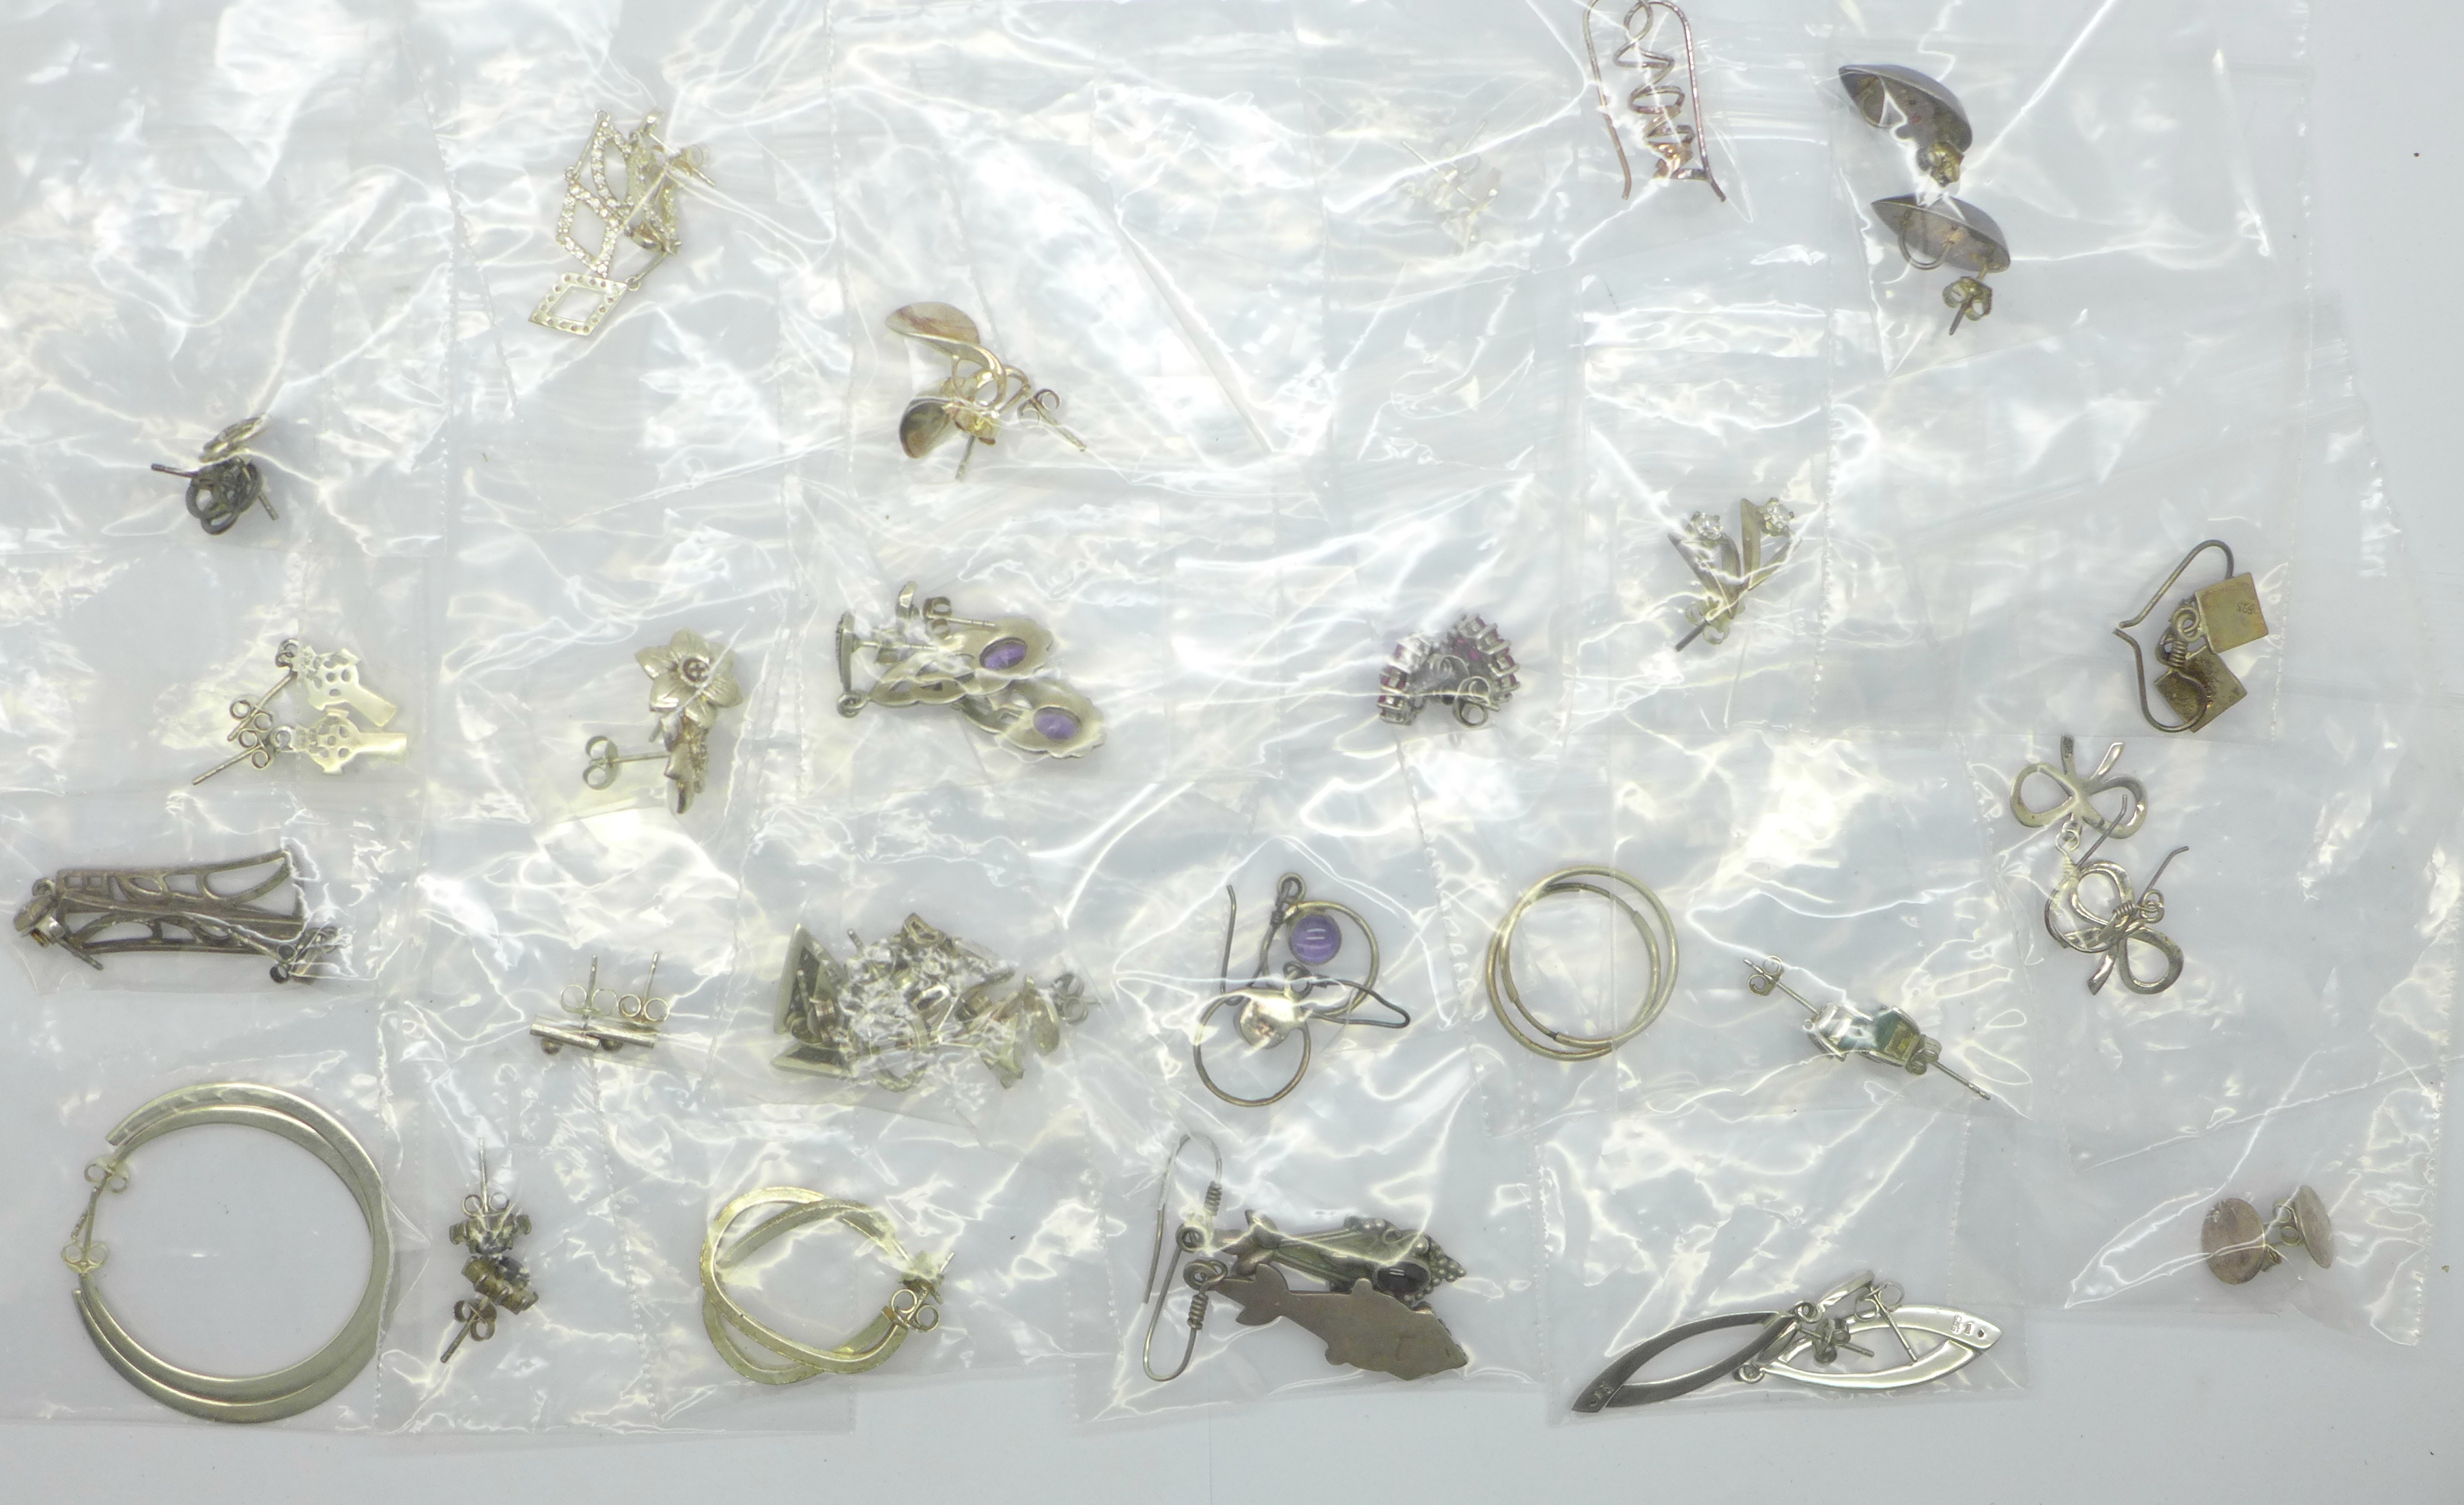 Twenty-five pairs of silver earrings